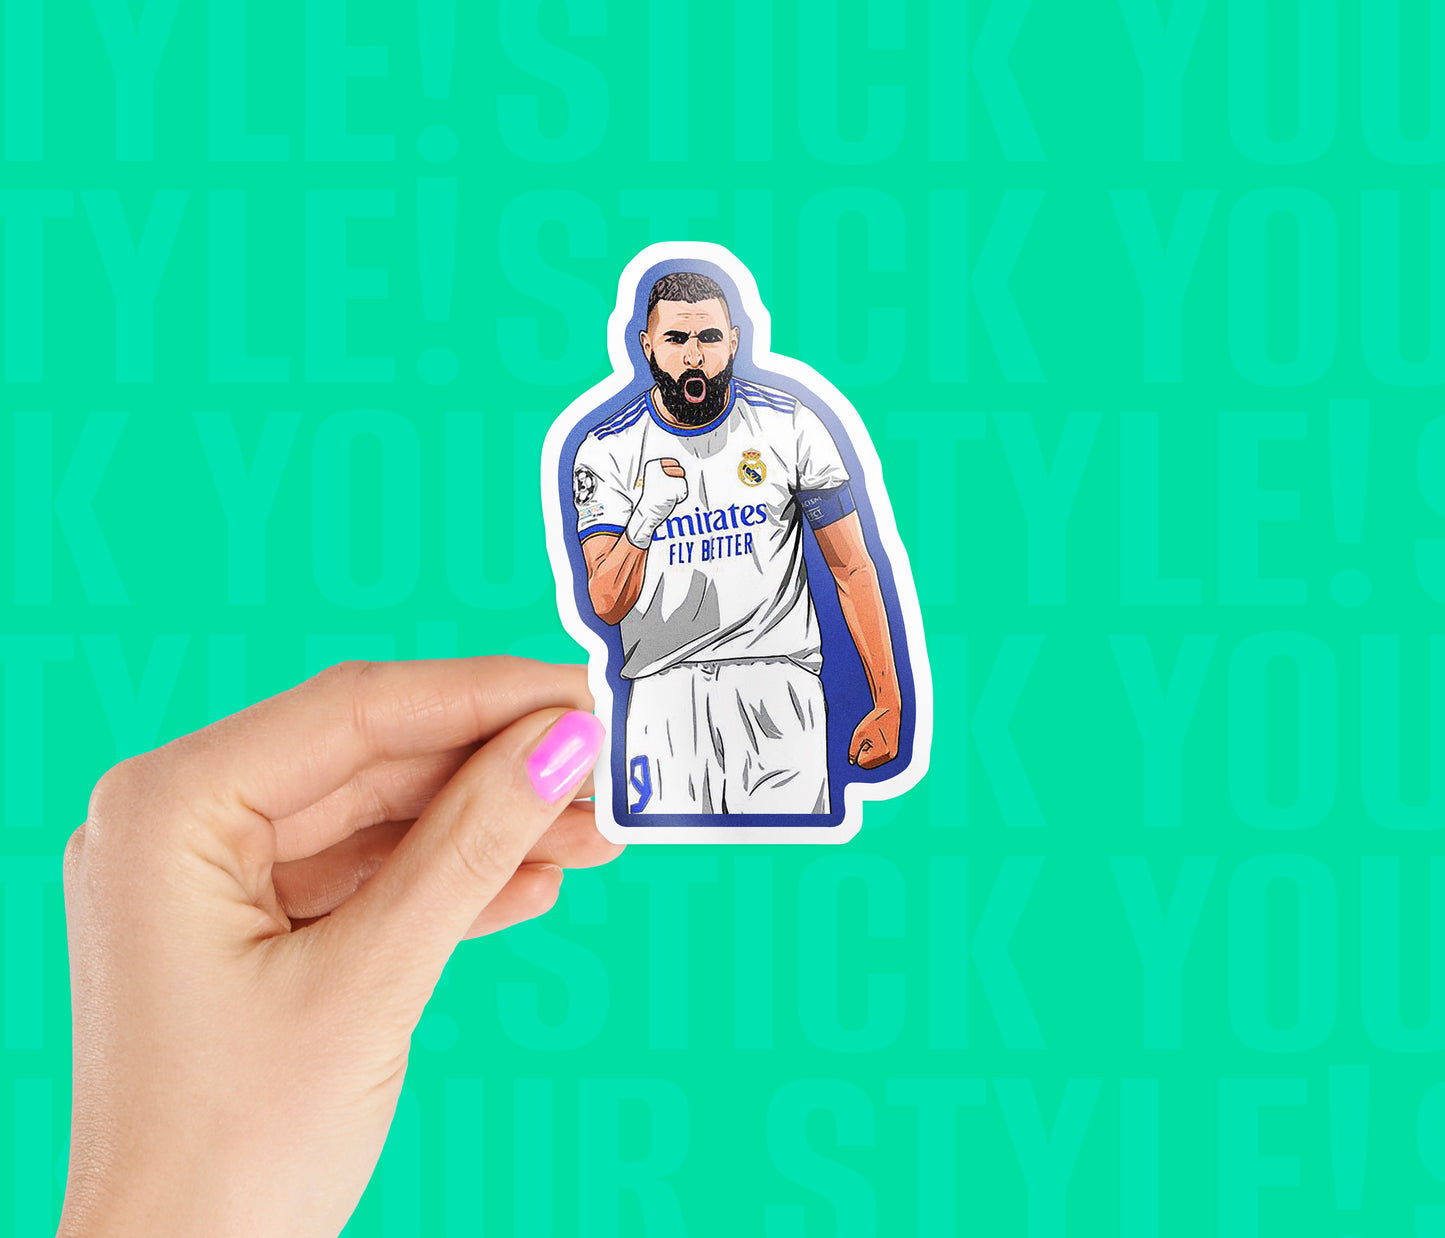 Karim Benzema Sticker